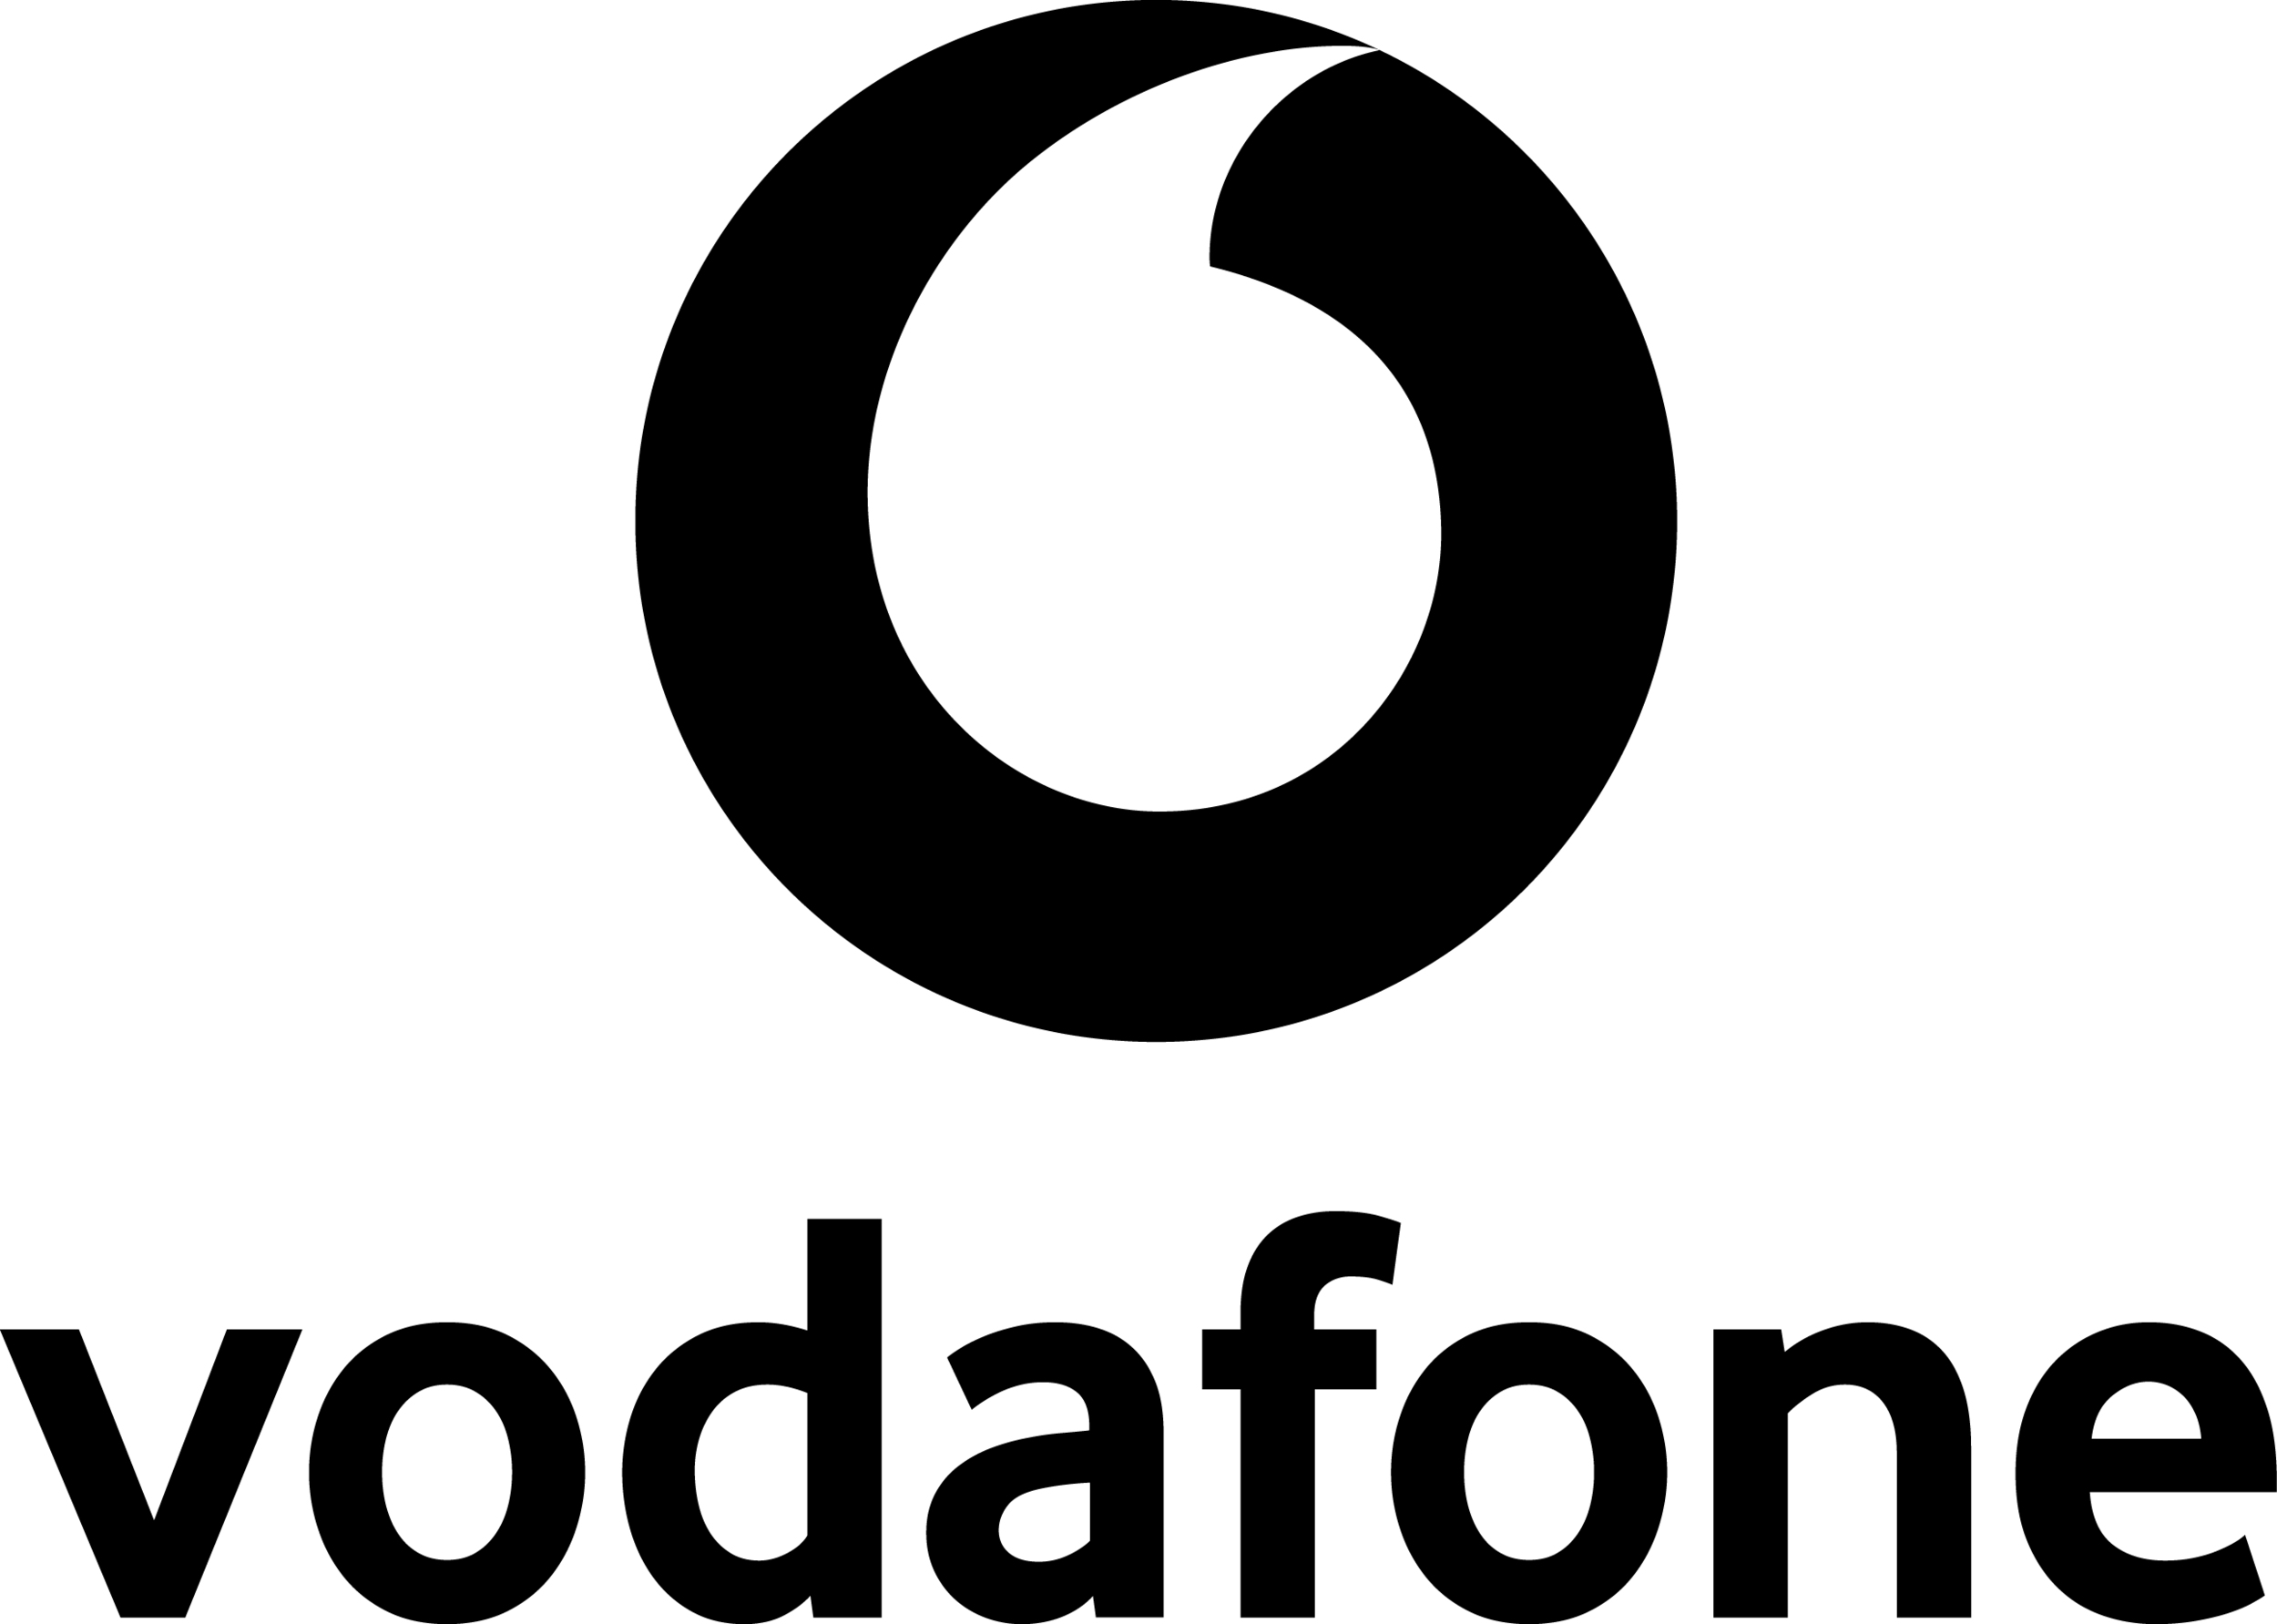 vodafone-logo-black.png